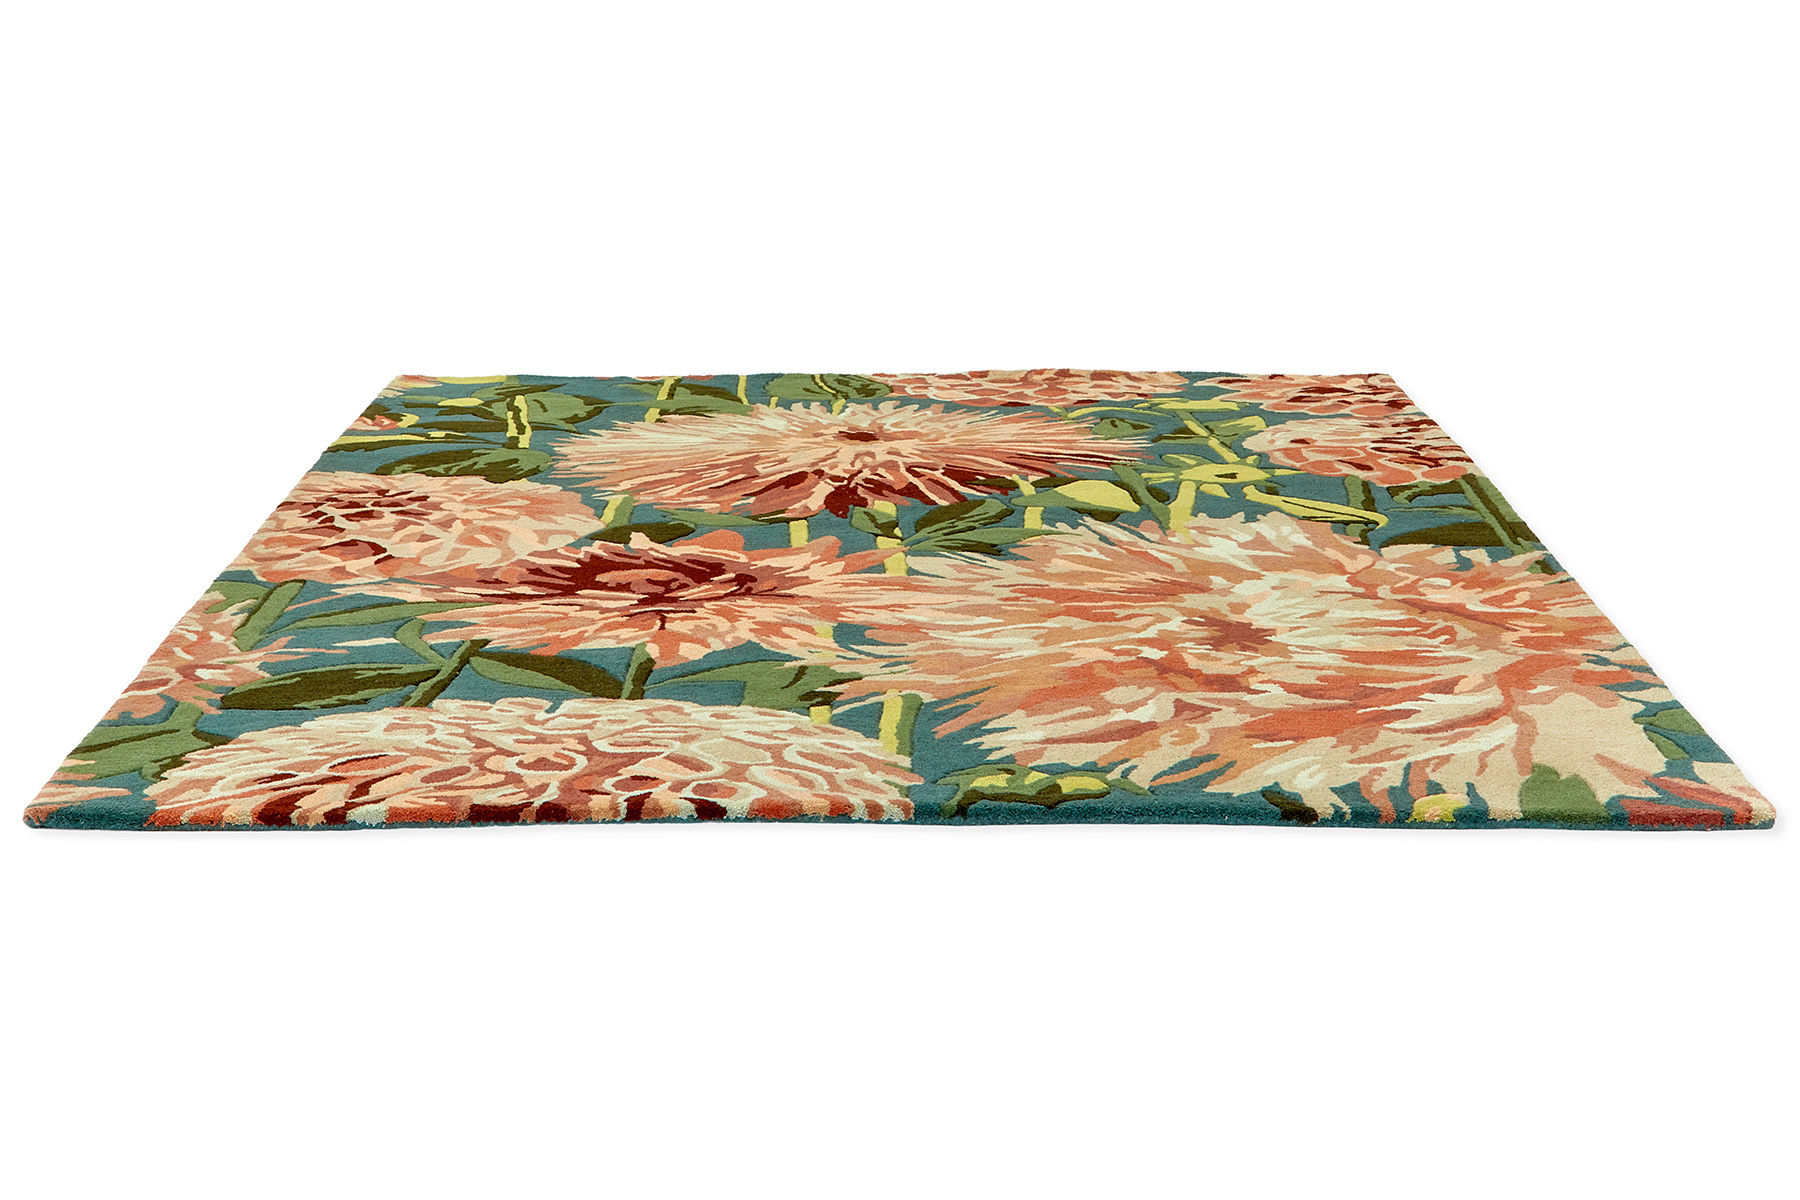 Dahlia Coral / Wilderness Designer Rug ☞ Size: 5' 7" x 8' (170 x 240 cm)